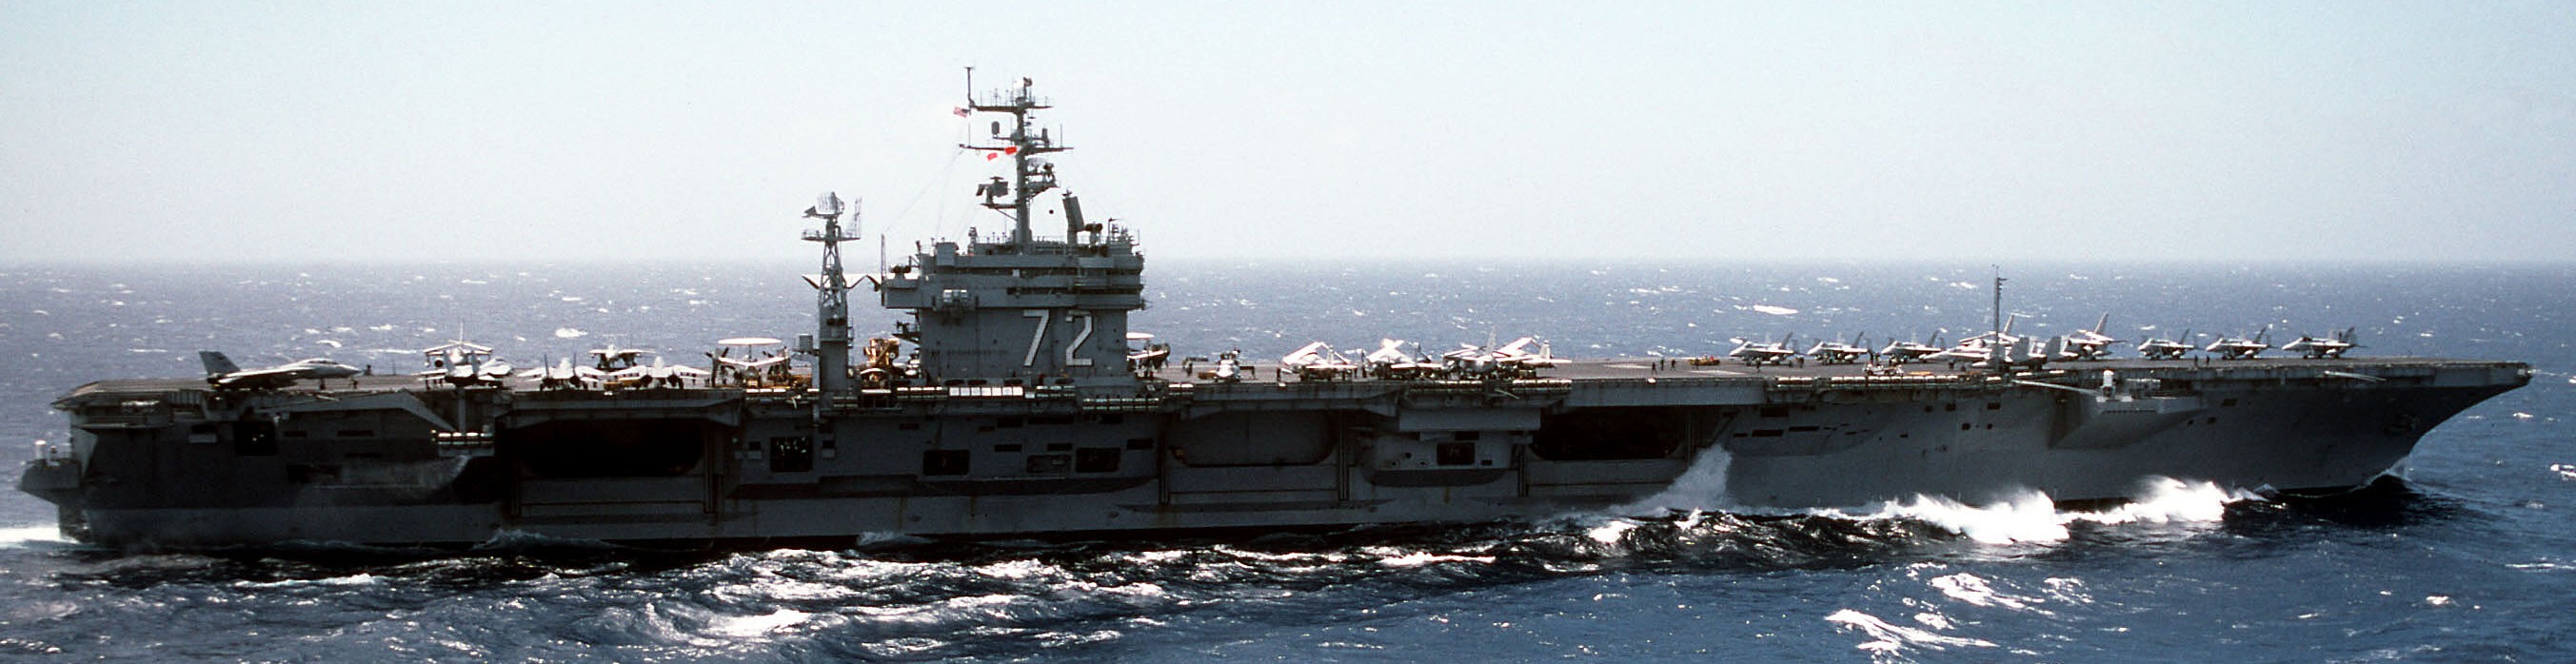 cvn-72 uss abraham lincoln nimitz class aircraft carrier air wing cvw-11 us navy 171